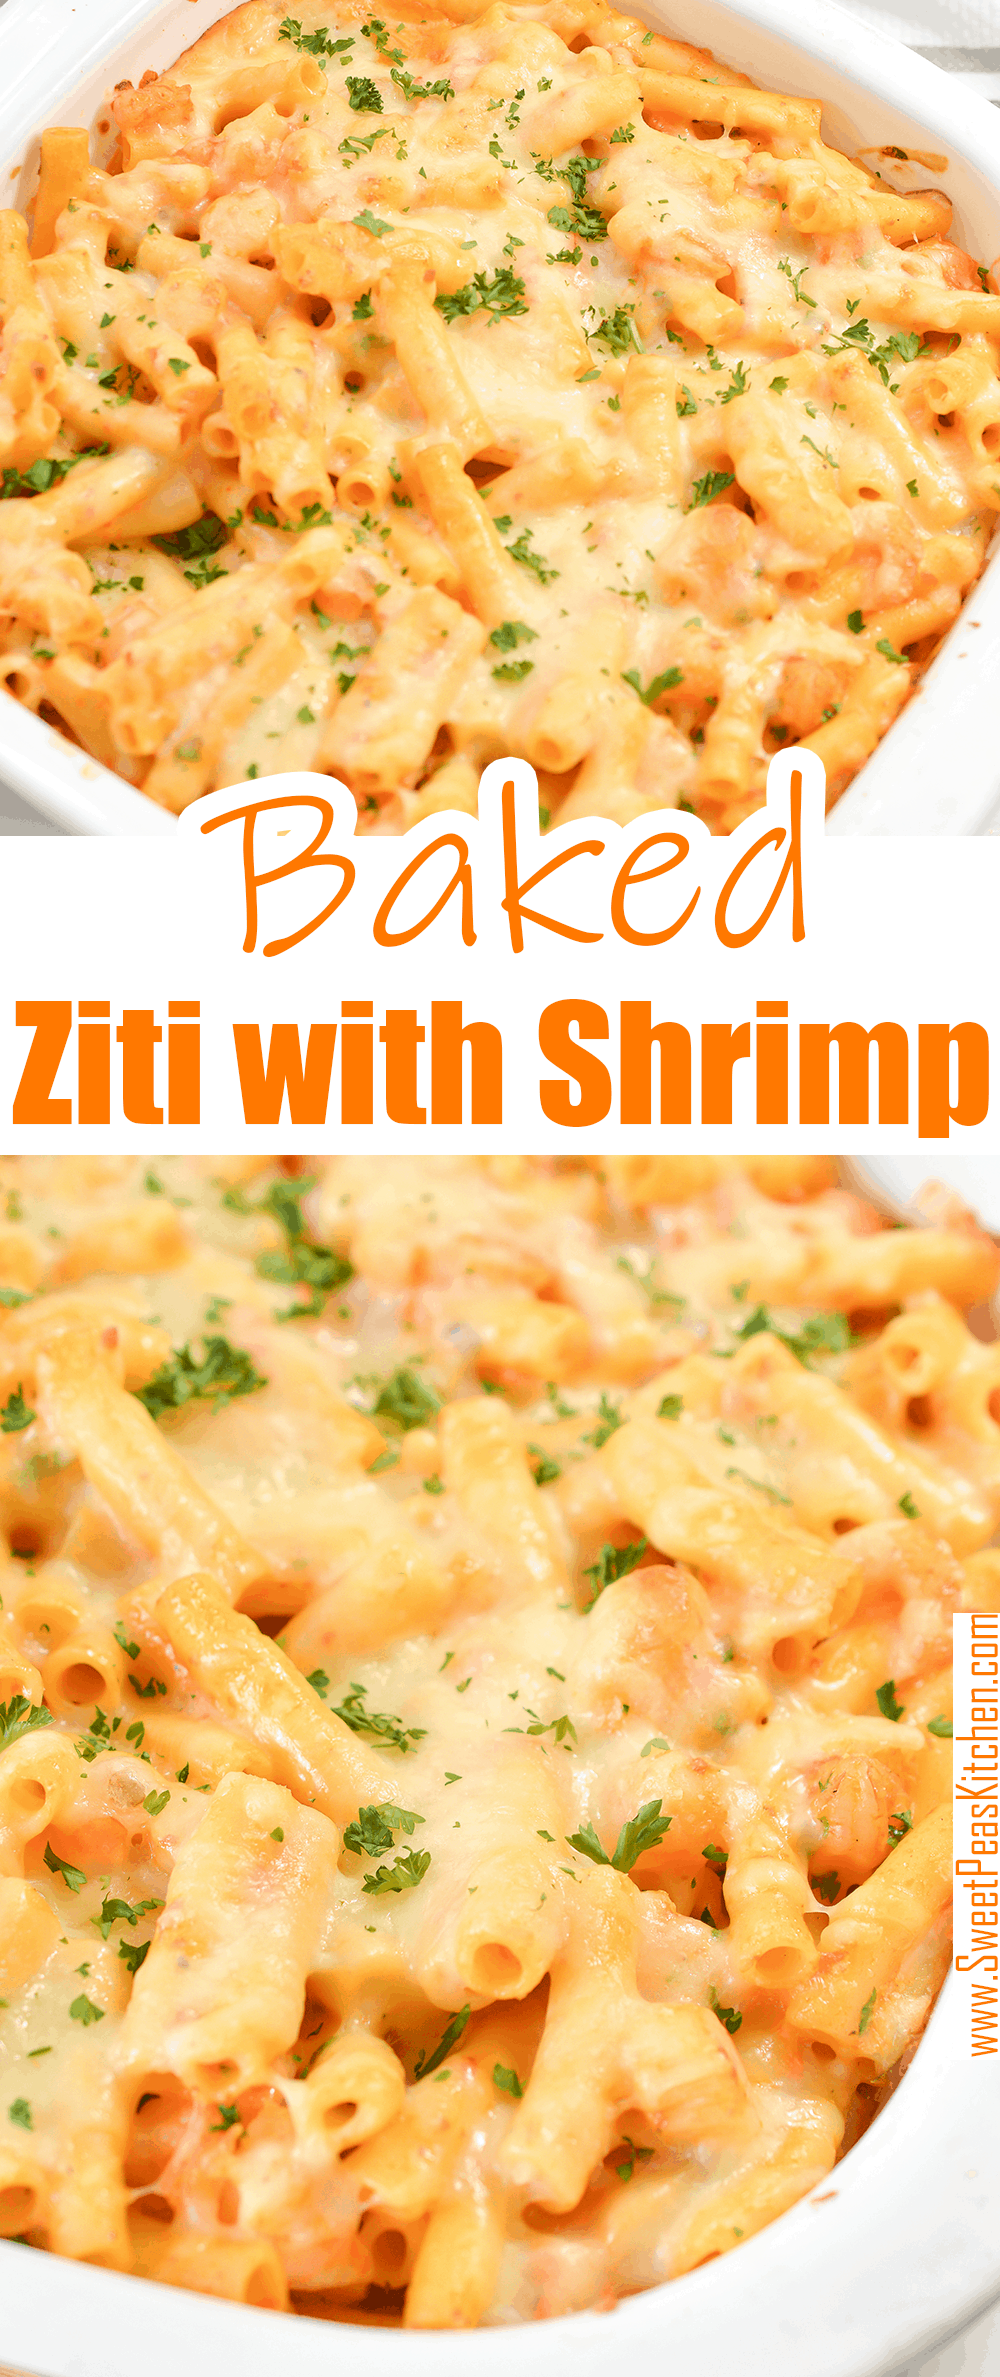 Baked Ziti with Shrimp on pinterest